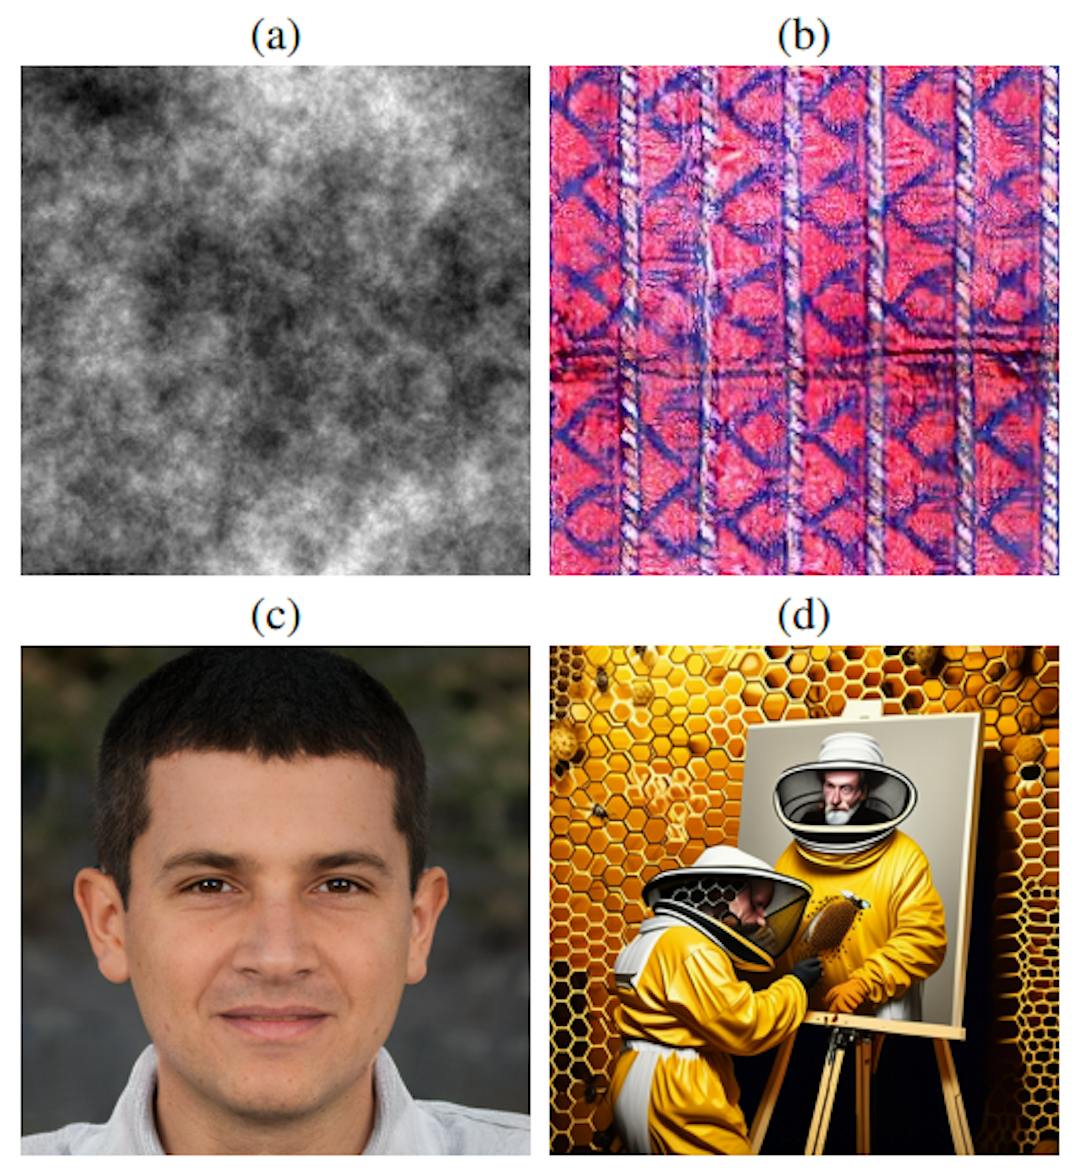 图 1. 自然图像统计模型的演变：(a) 具有 1/ω 功率谱的分形图案；(b) 合成纺织图案 [25]；(c) GAN 生成的人脸 [17]；(d) 扩散生成的场景，提示为“养蜂人正在画自画像” [1]。